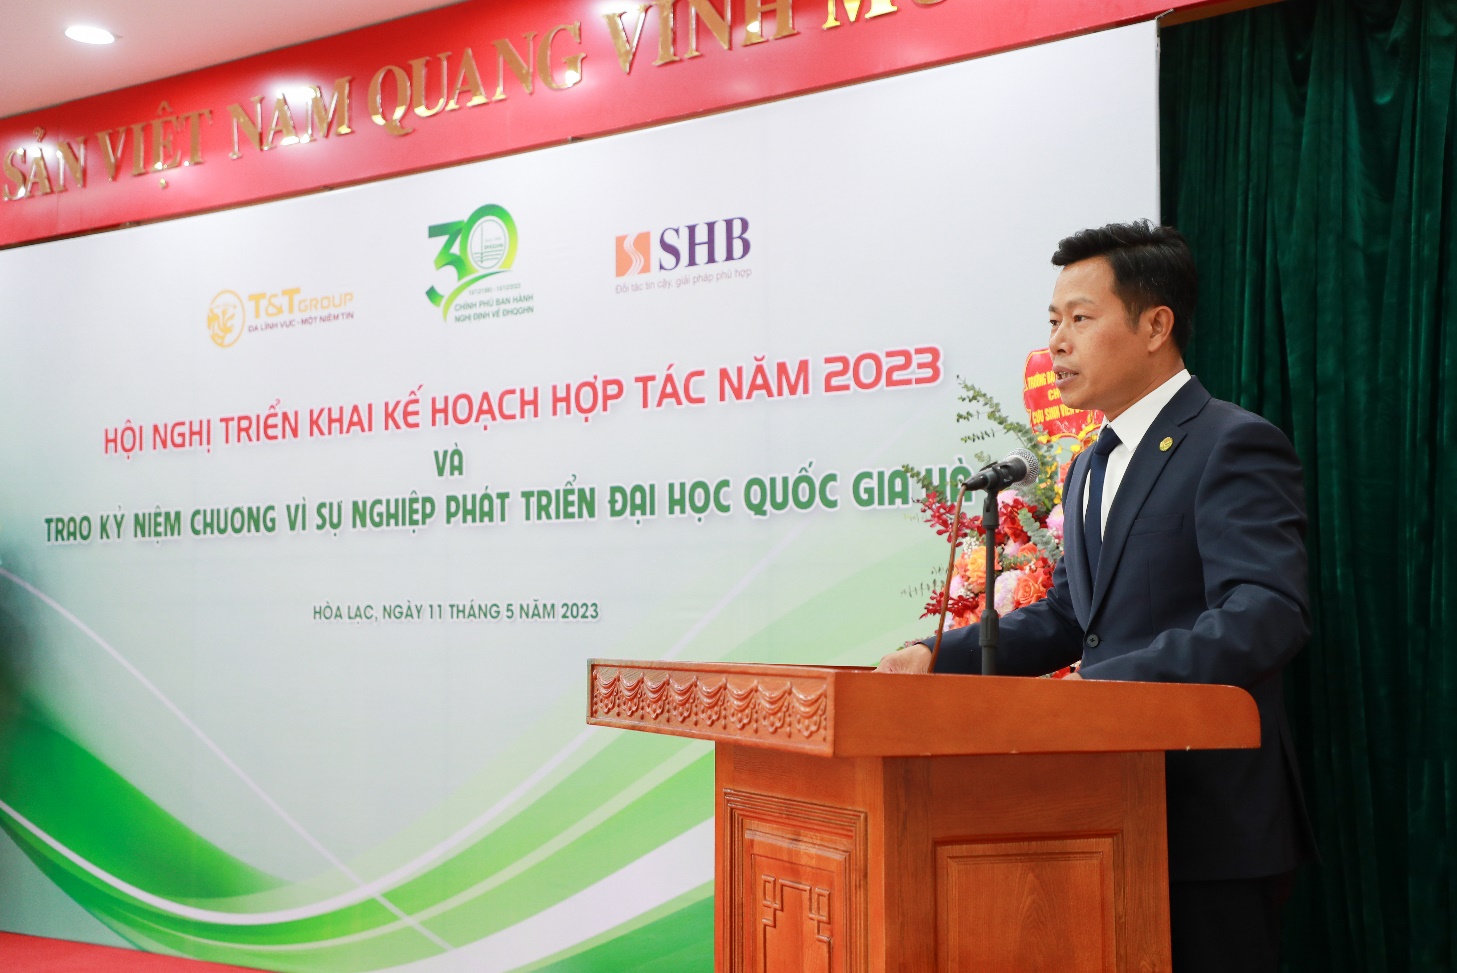 Doanh nhân Đỗ Quang Hiển nhận kỷ niệm chương vì sự nghiệp phát triển ĐHQG Hà Nội - Ảnh 1.